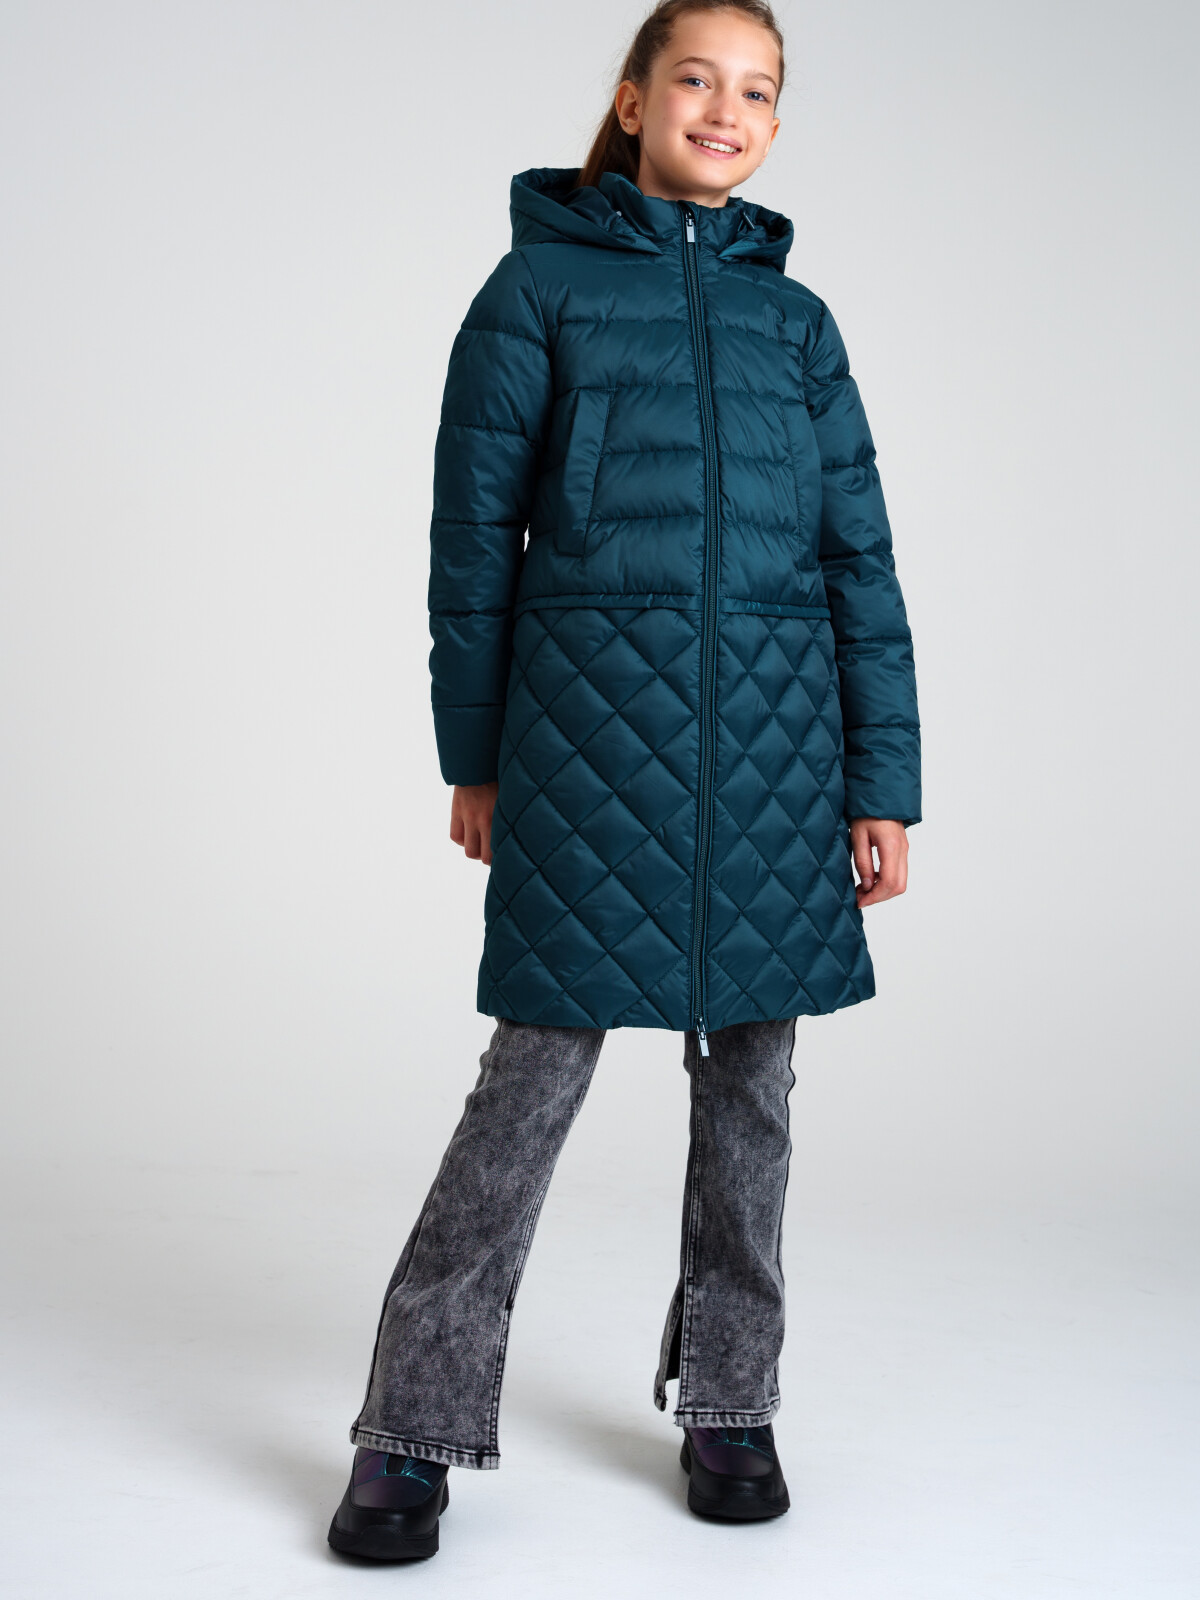 Пальто текстильное с полиуретановым покрытием для девочек PlayToday, темно-зеленый, 152